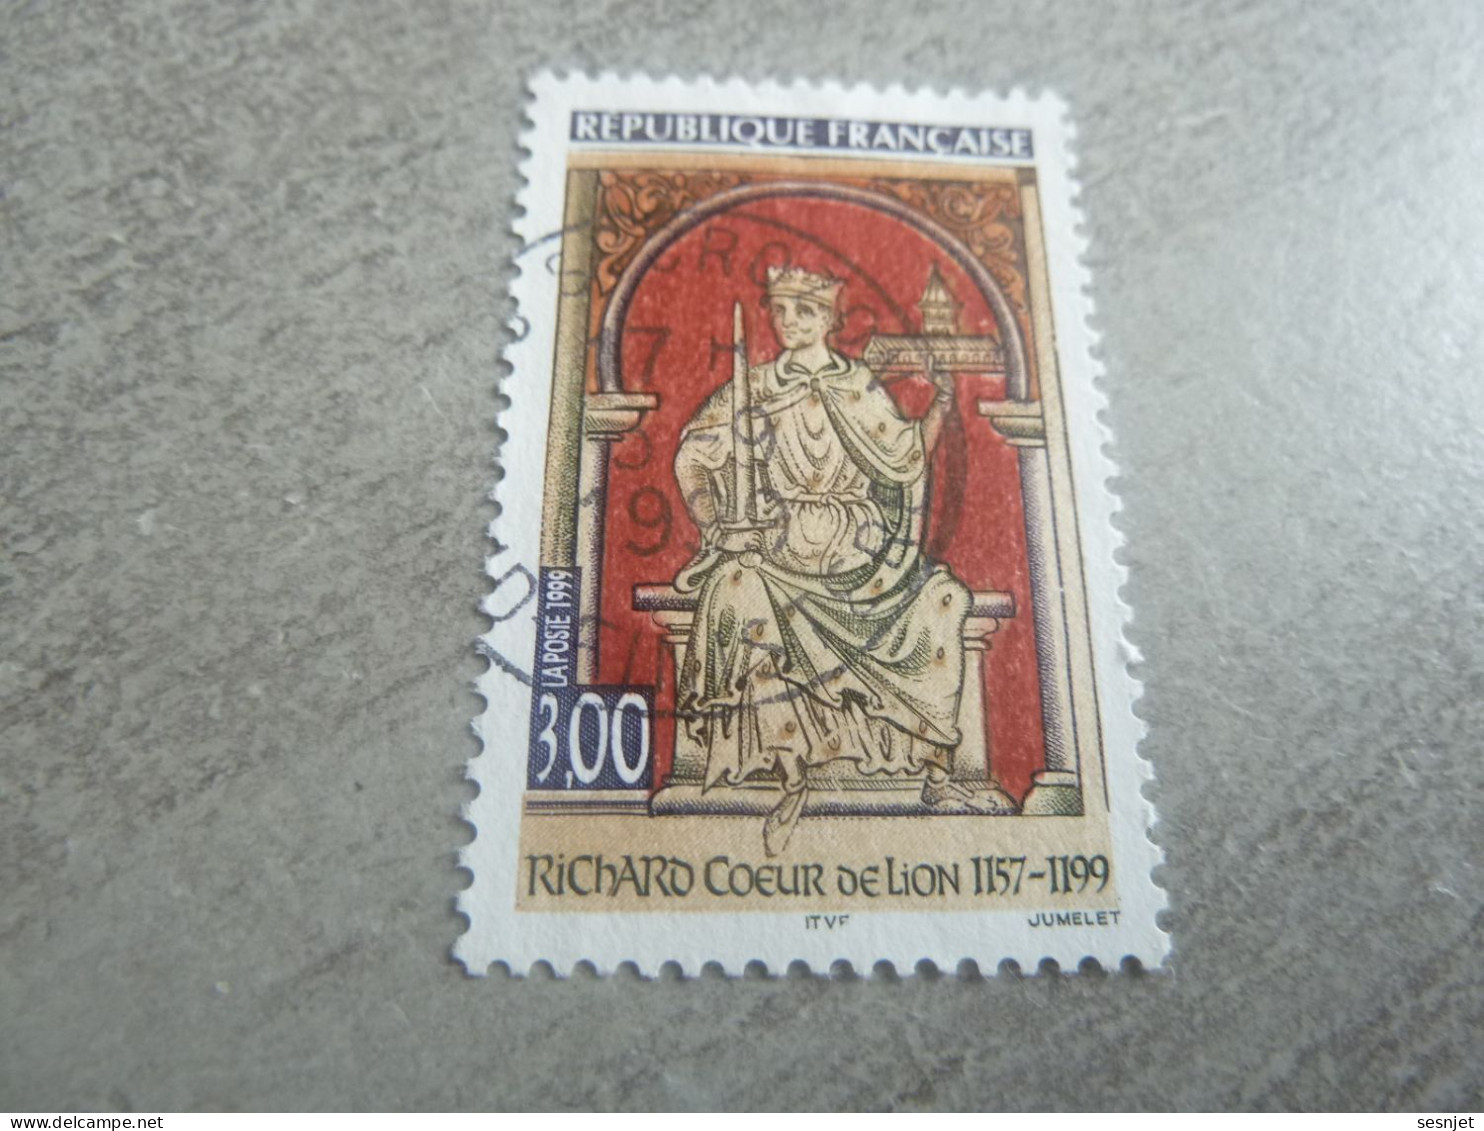 Richard Coeur De Lion (1157-1199) Roi - 3f. - Yt 3238 - Multicolore - Oblitéré - Année 1999 - - Usati